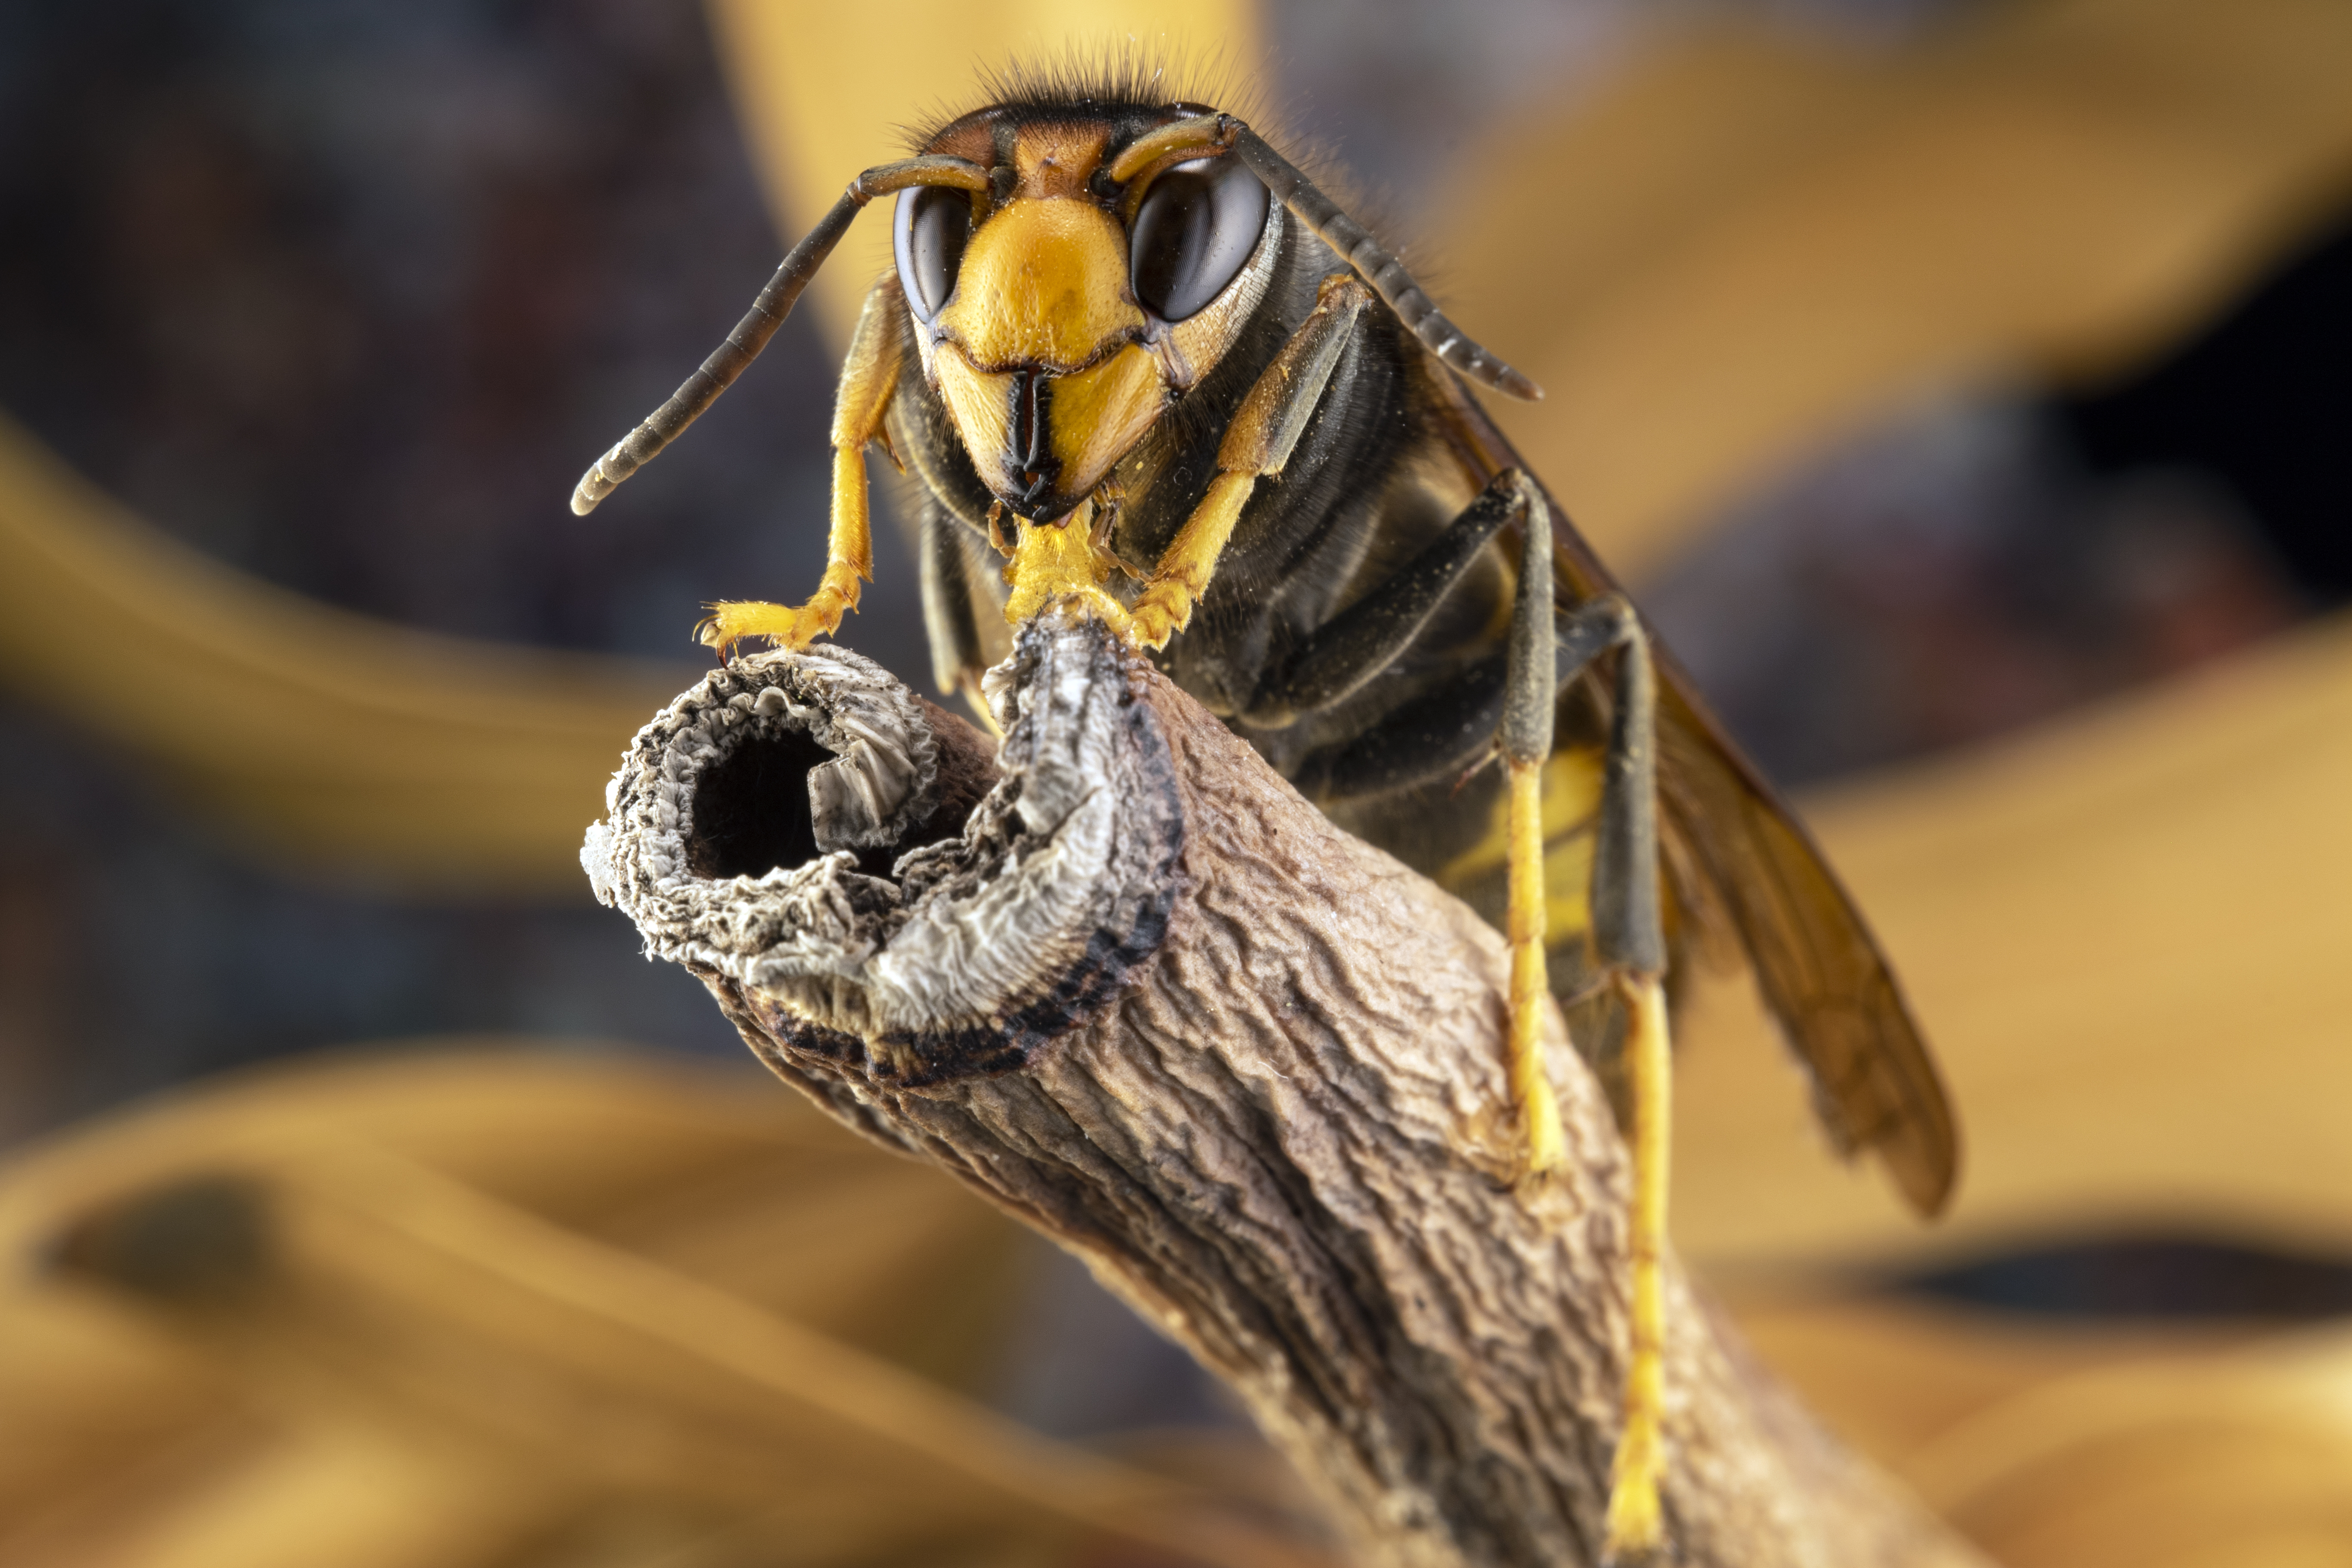 Gelbbeinige Hornissen dezimieren die Bienenpopulationen und stellen eine echte Bedrohung für die Natur dar